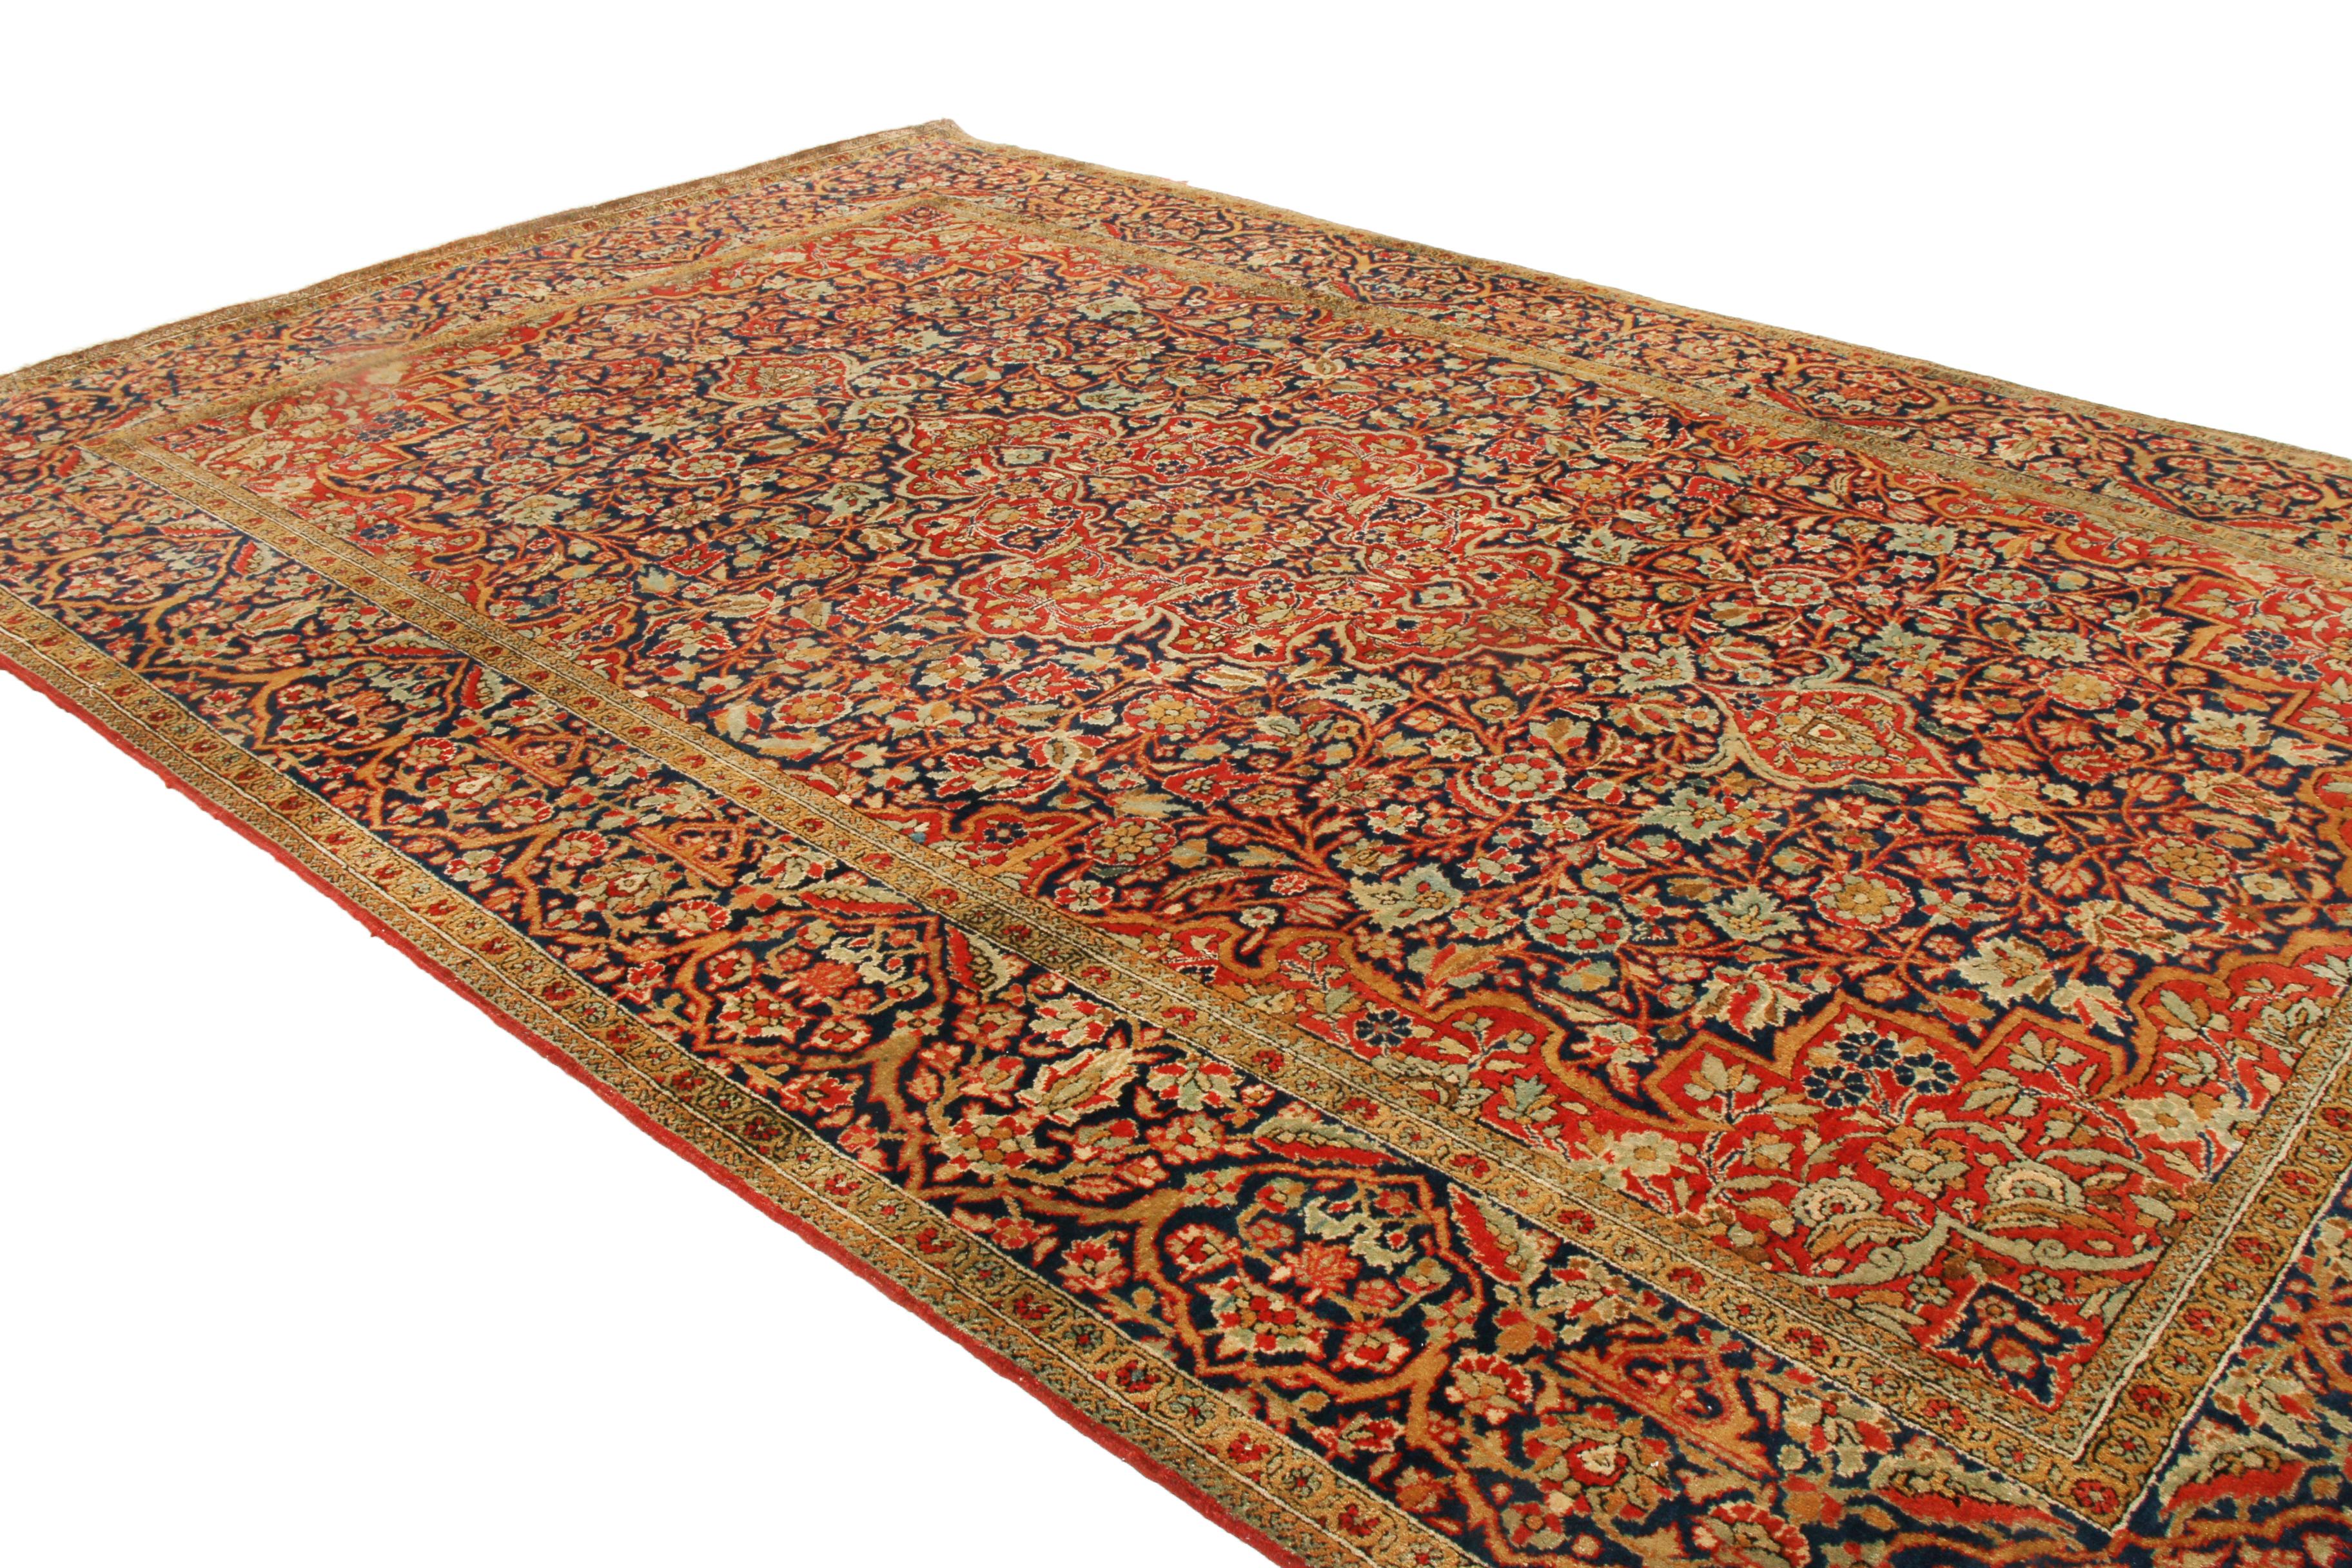 Originaire de Perse entre 1900 et 1910, ce tapis persan antique traditionnel est noué à la main dans une soie naturellement irisée pour compléter un motif de champ all-over extrêmement fin. Le vaste motif central comprend des feuilles en lancette et